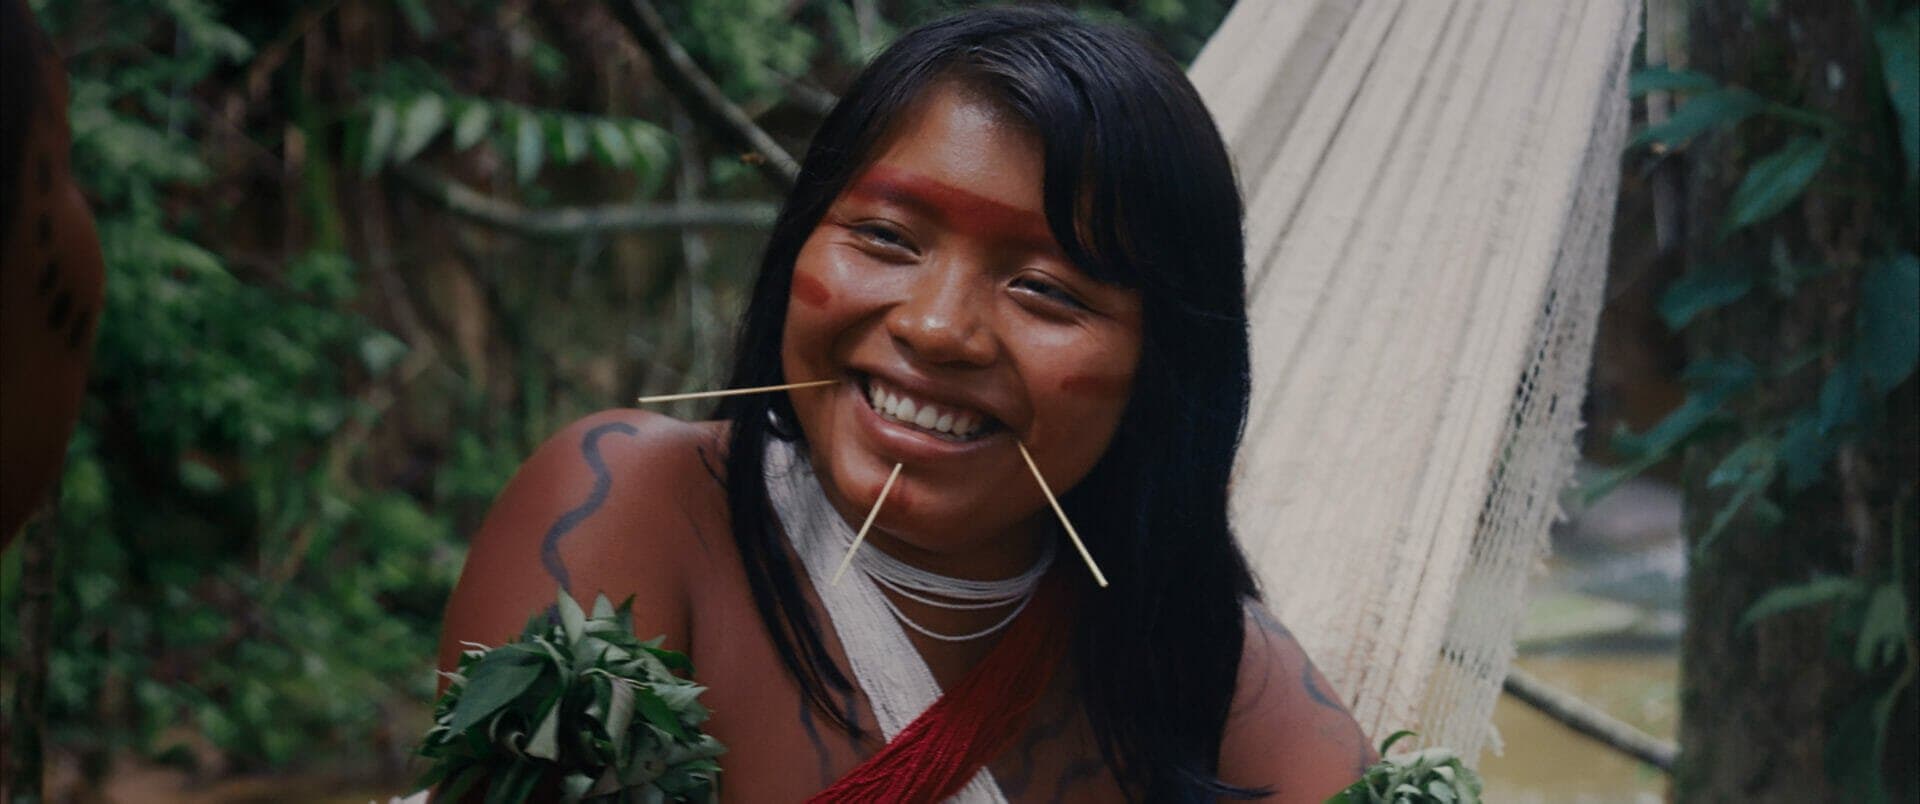 Itaú Cultural Play faz nova exibição de A Última Floresta, filme do diretor Luiz Bolognesi roteirizado com Davi Kopenawa Yanomami